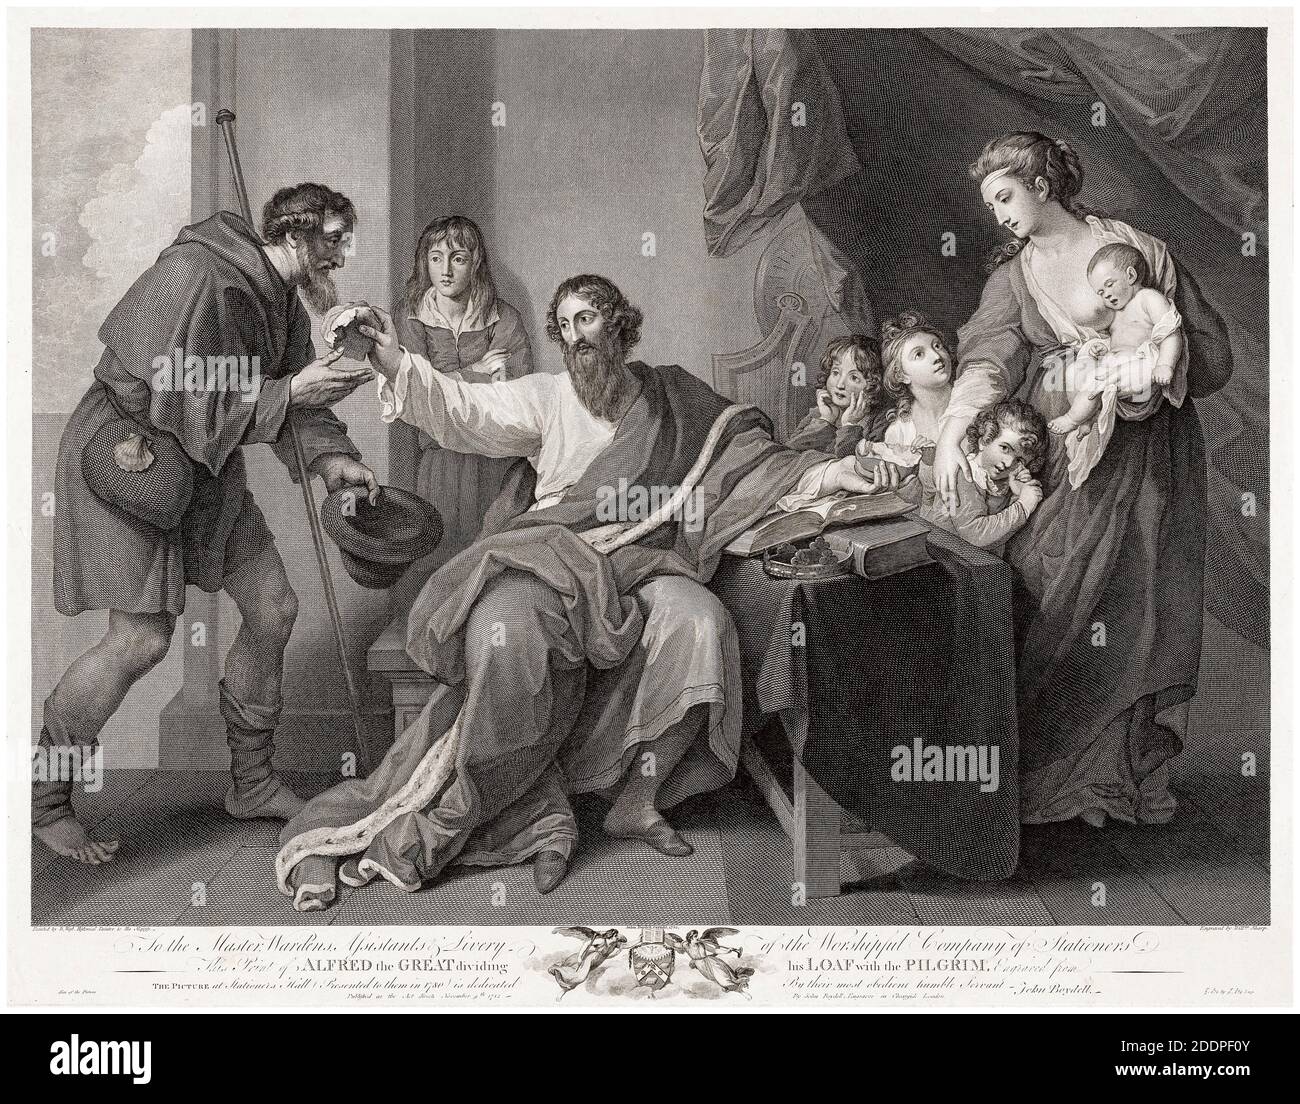 Alfred der große teilt sein Brot mit dem Pilger, Stich von William Sharp nach Benjamin West, 1782 Stockfoto